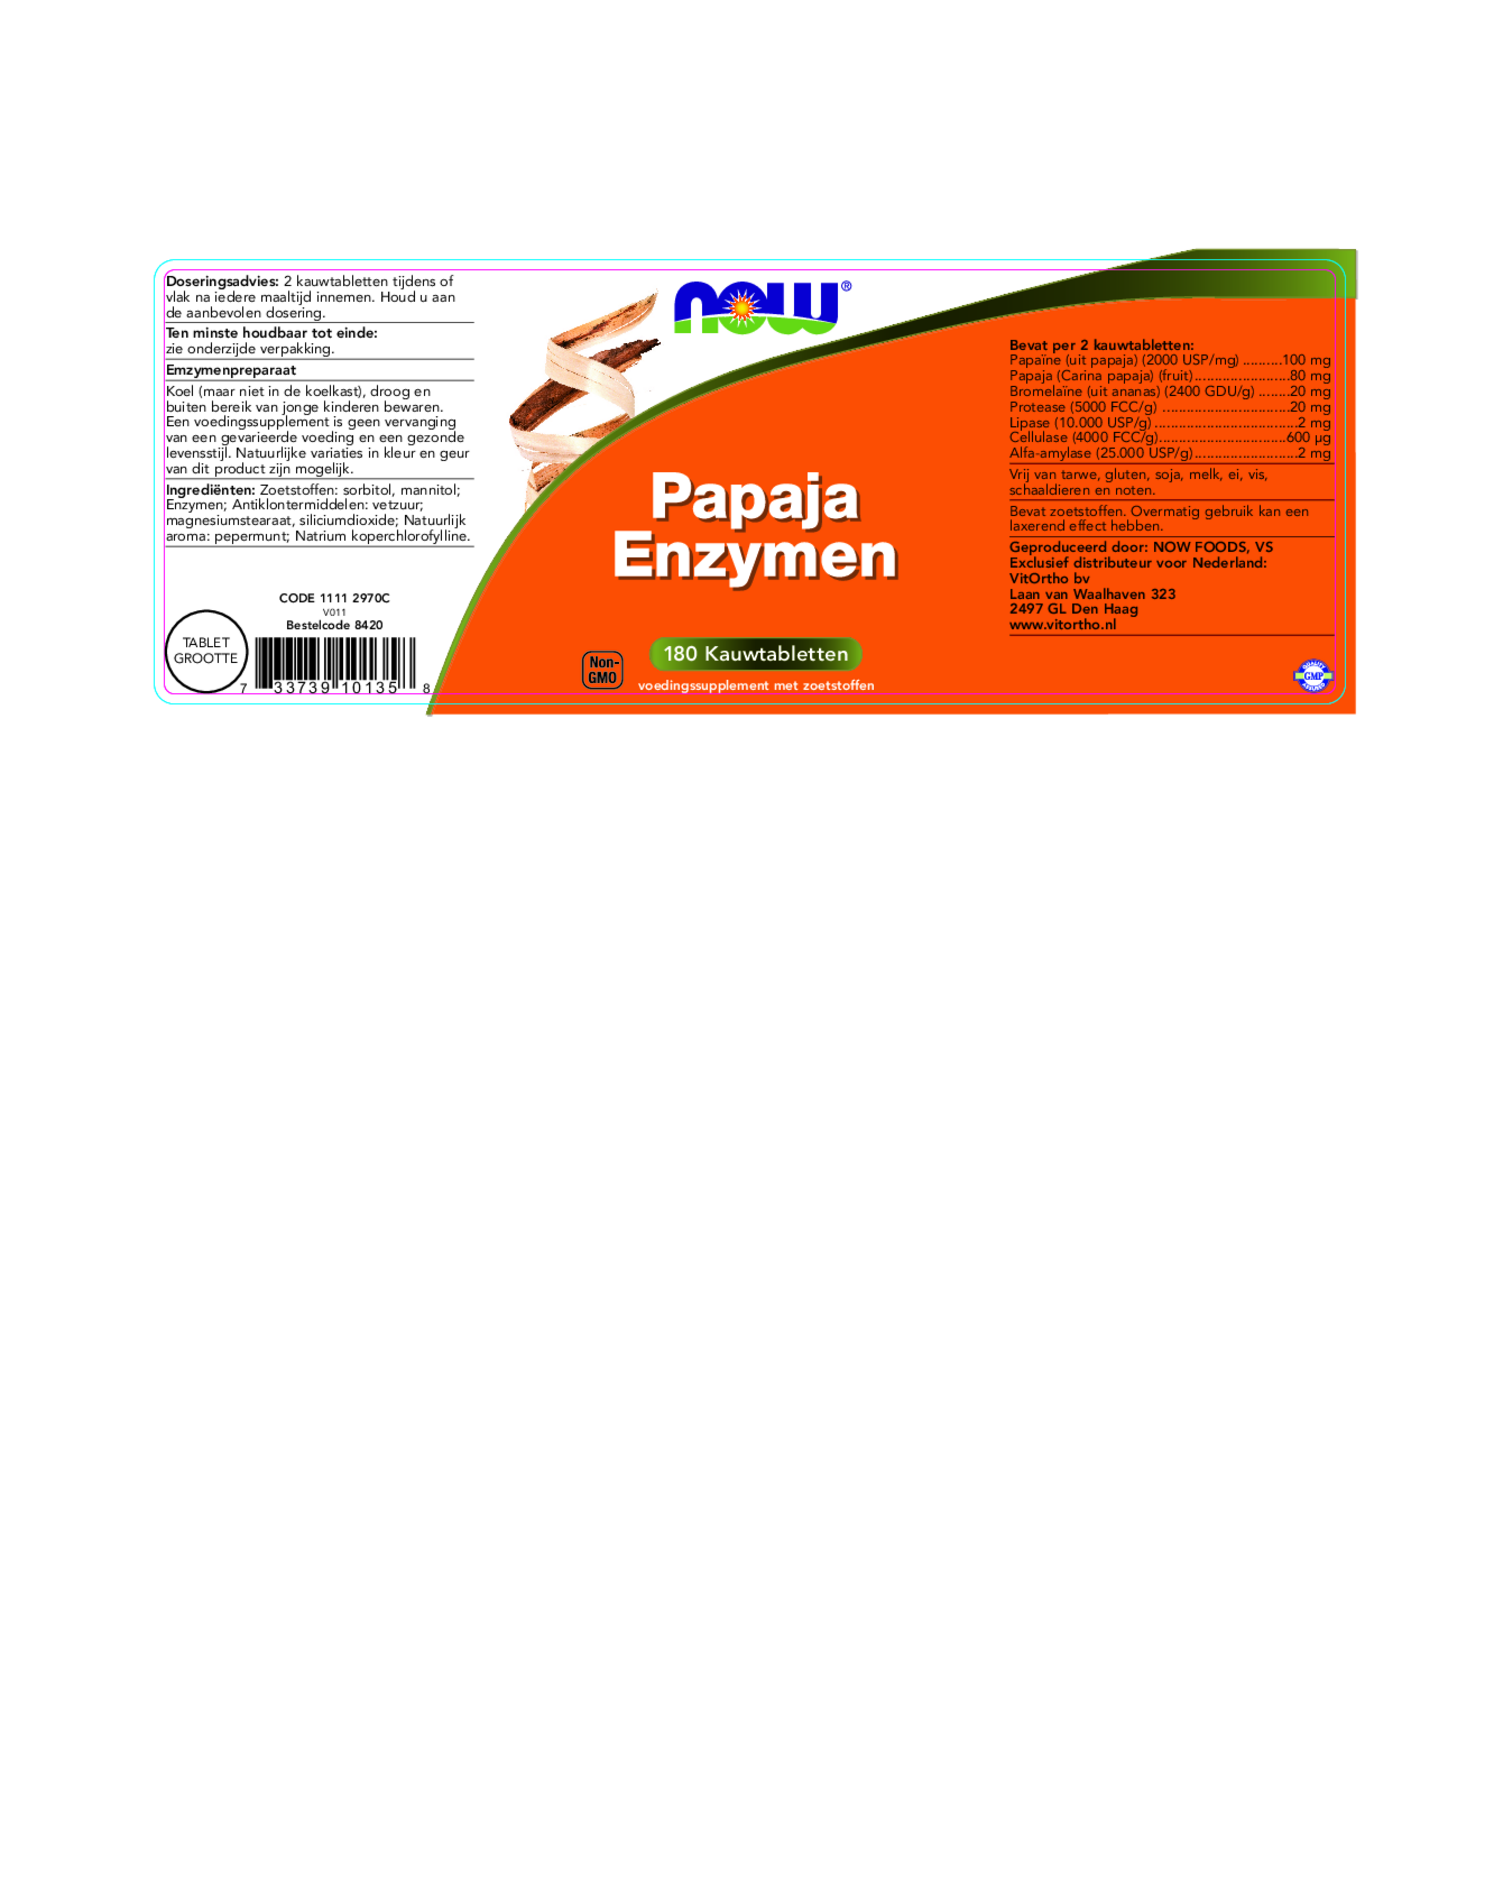 Papaja Enzymen Kauwtabletten afbeelding van document #1, etiket